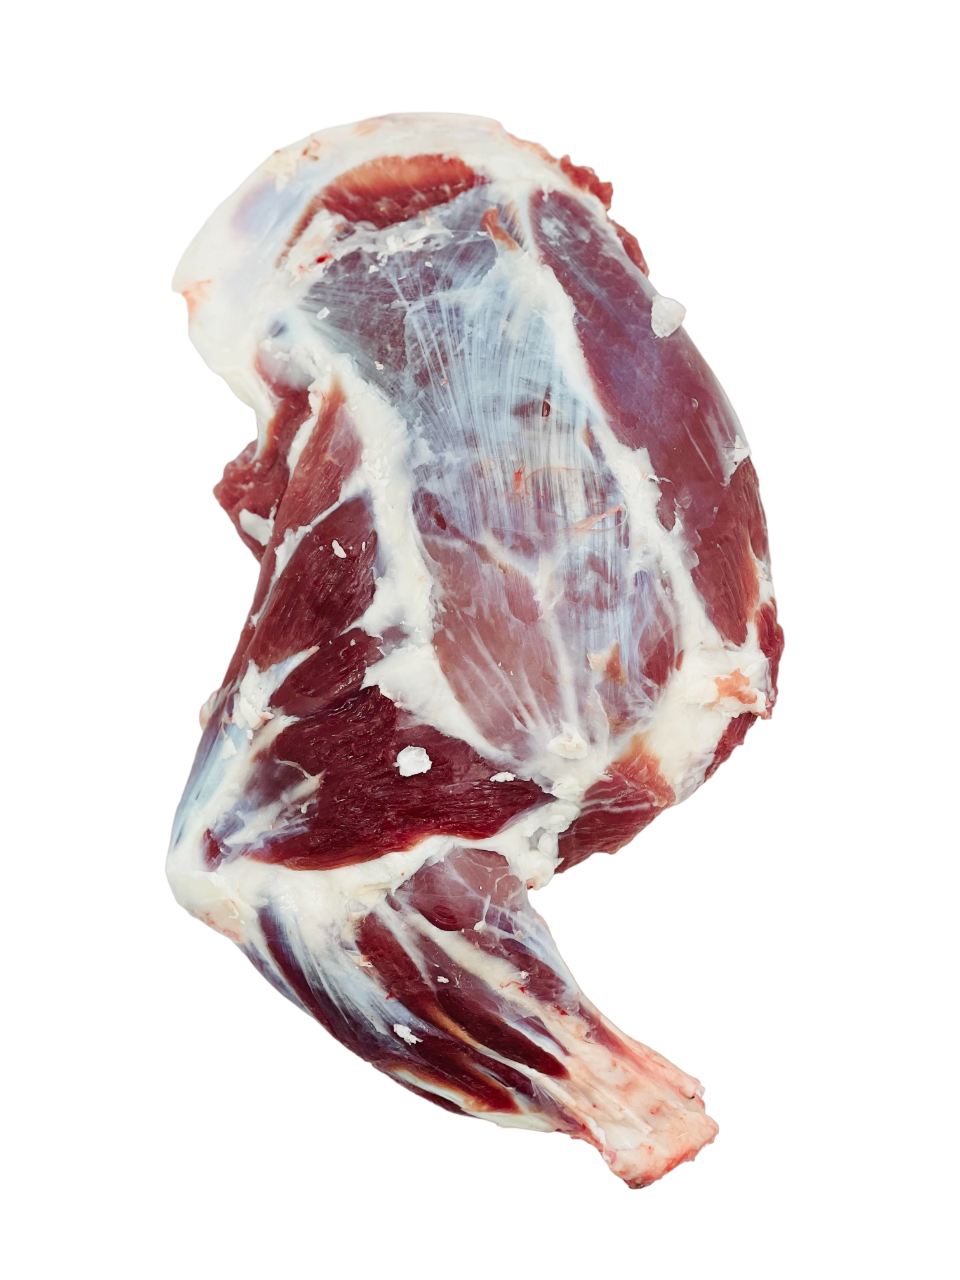 Halal Lamb Shoulder Whole Without Fat